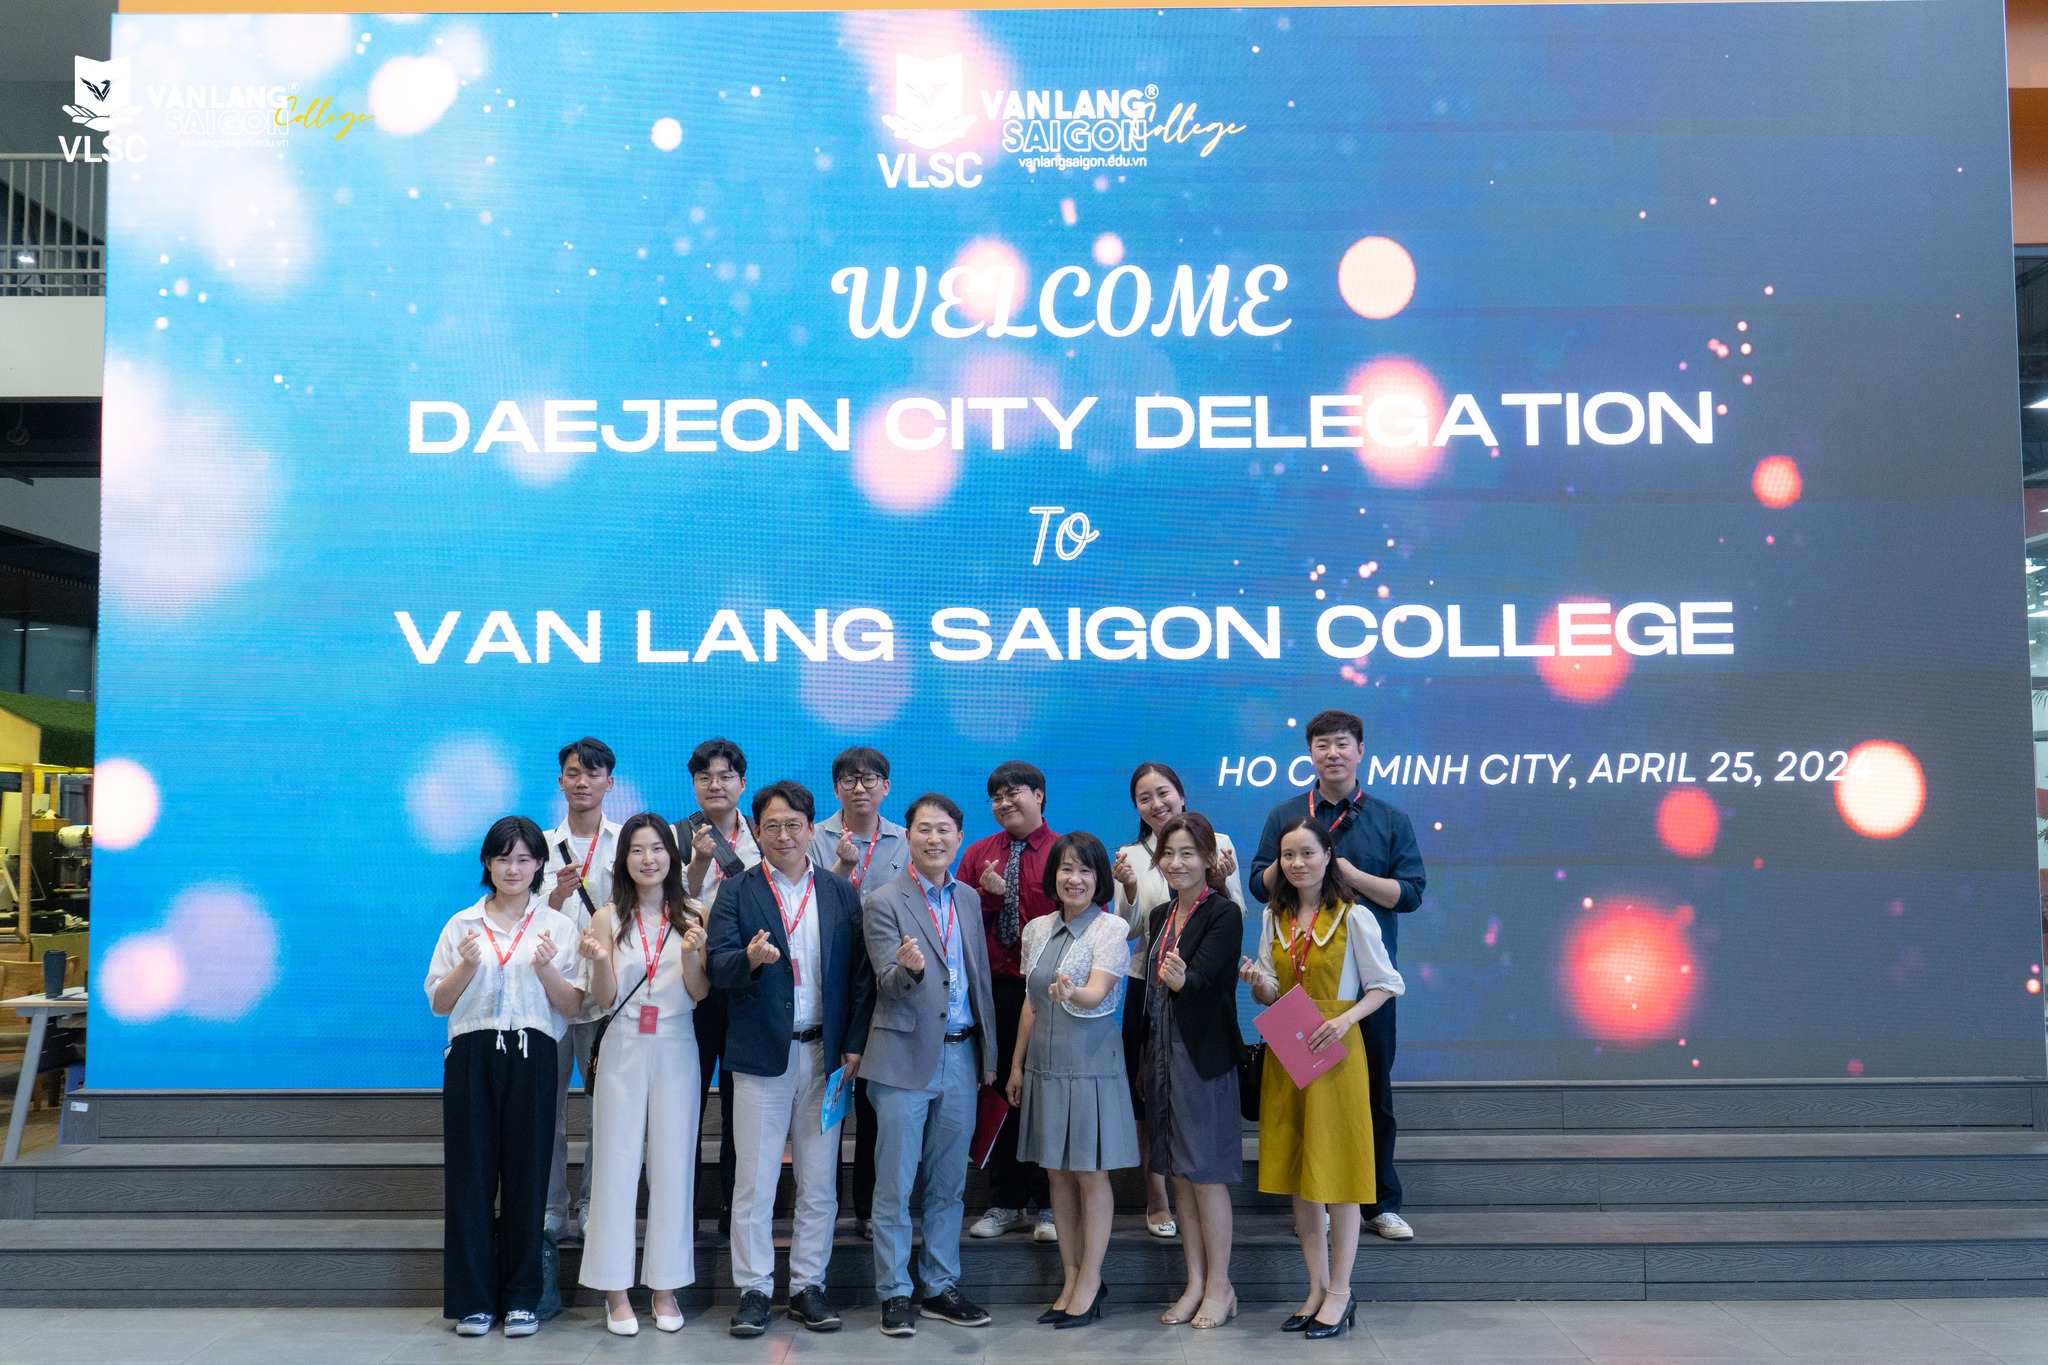 Trường Cao đẳng Văn Lang Sài Gòn long trọng tiếp đón Đoàn đại diện tỉnh Daejeon đến thăm và trao đổi cho sự hợp tác sắp tới giữa hai bên.